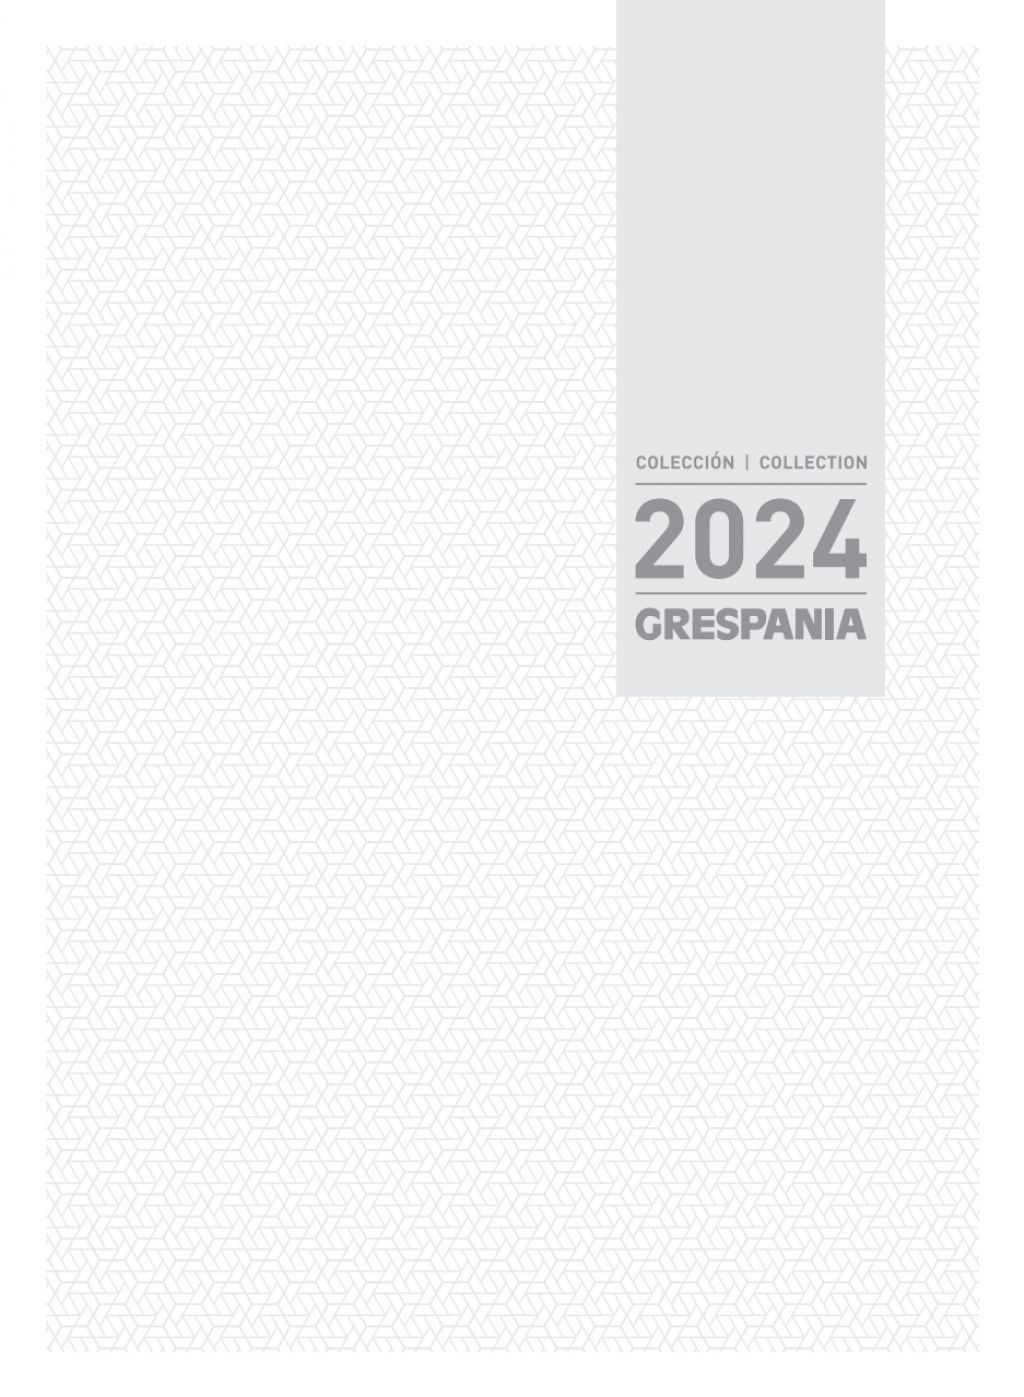 Grespania general 2024